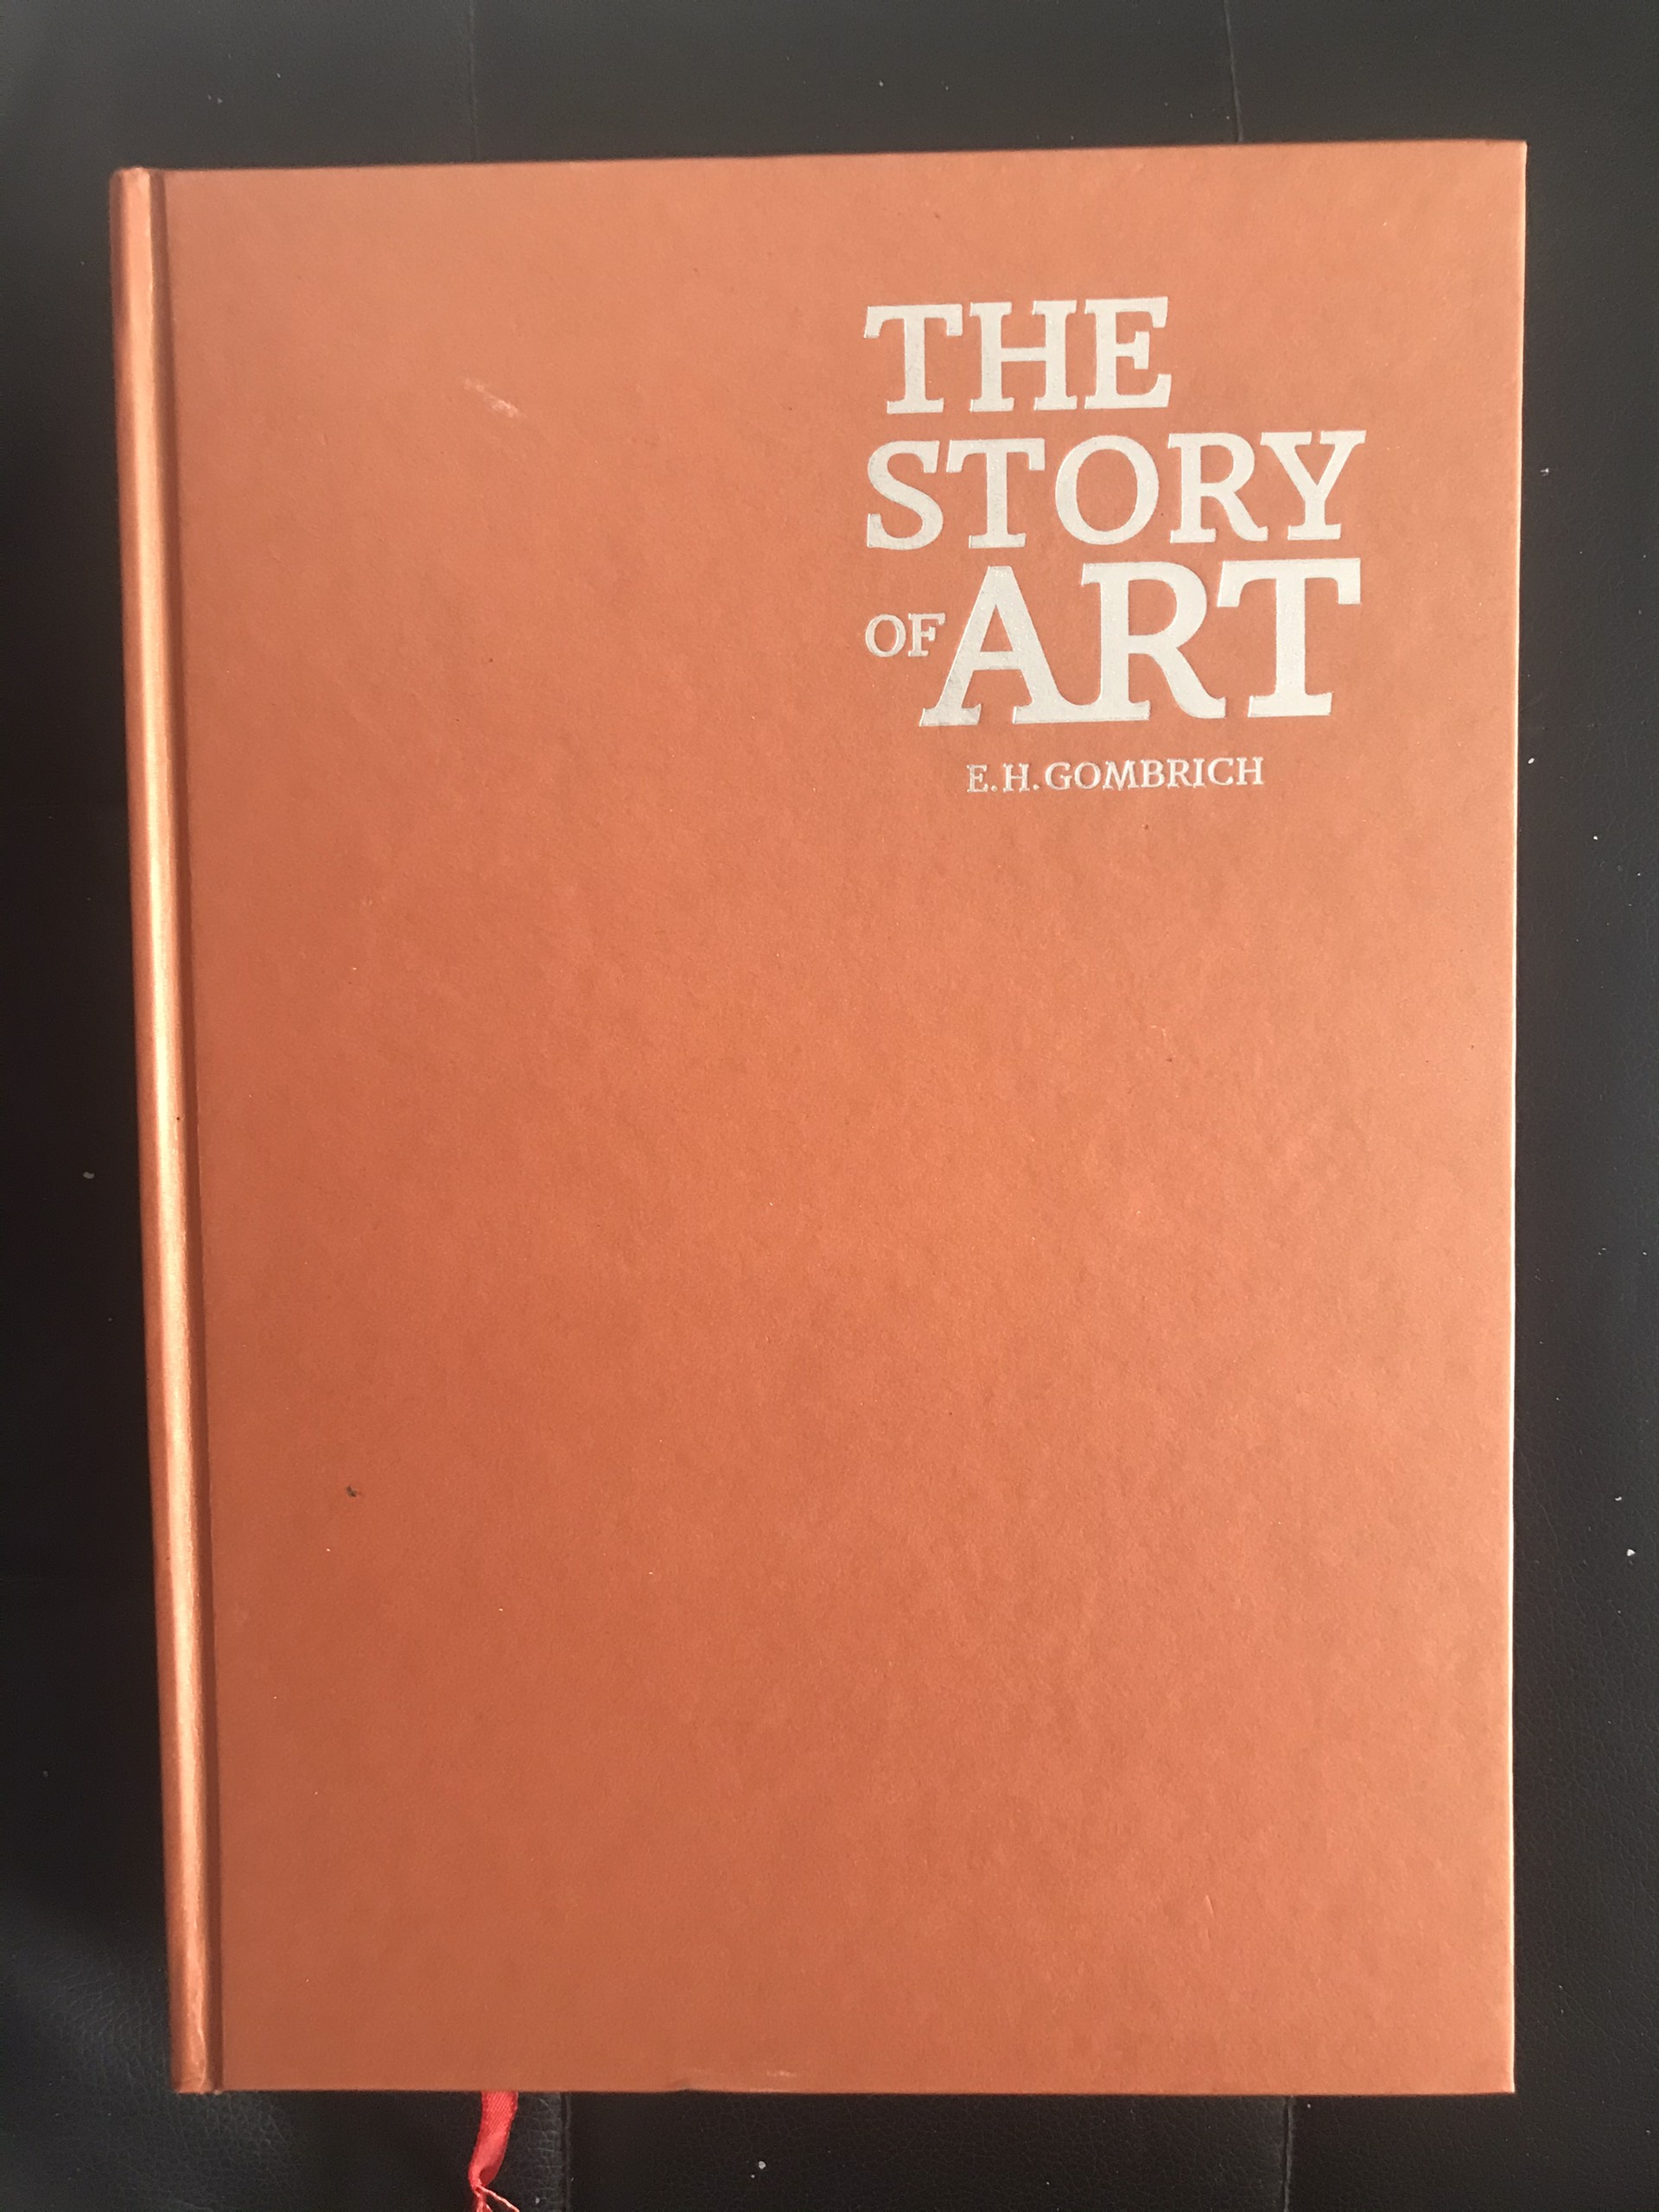 Câu Chuyện Nghệ Thuật - The Story Of Art